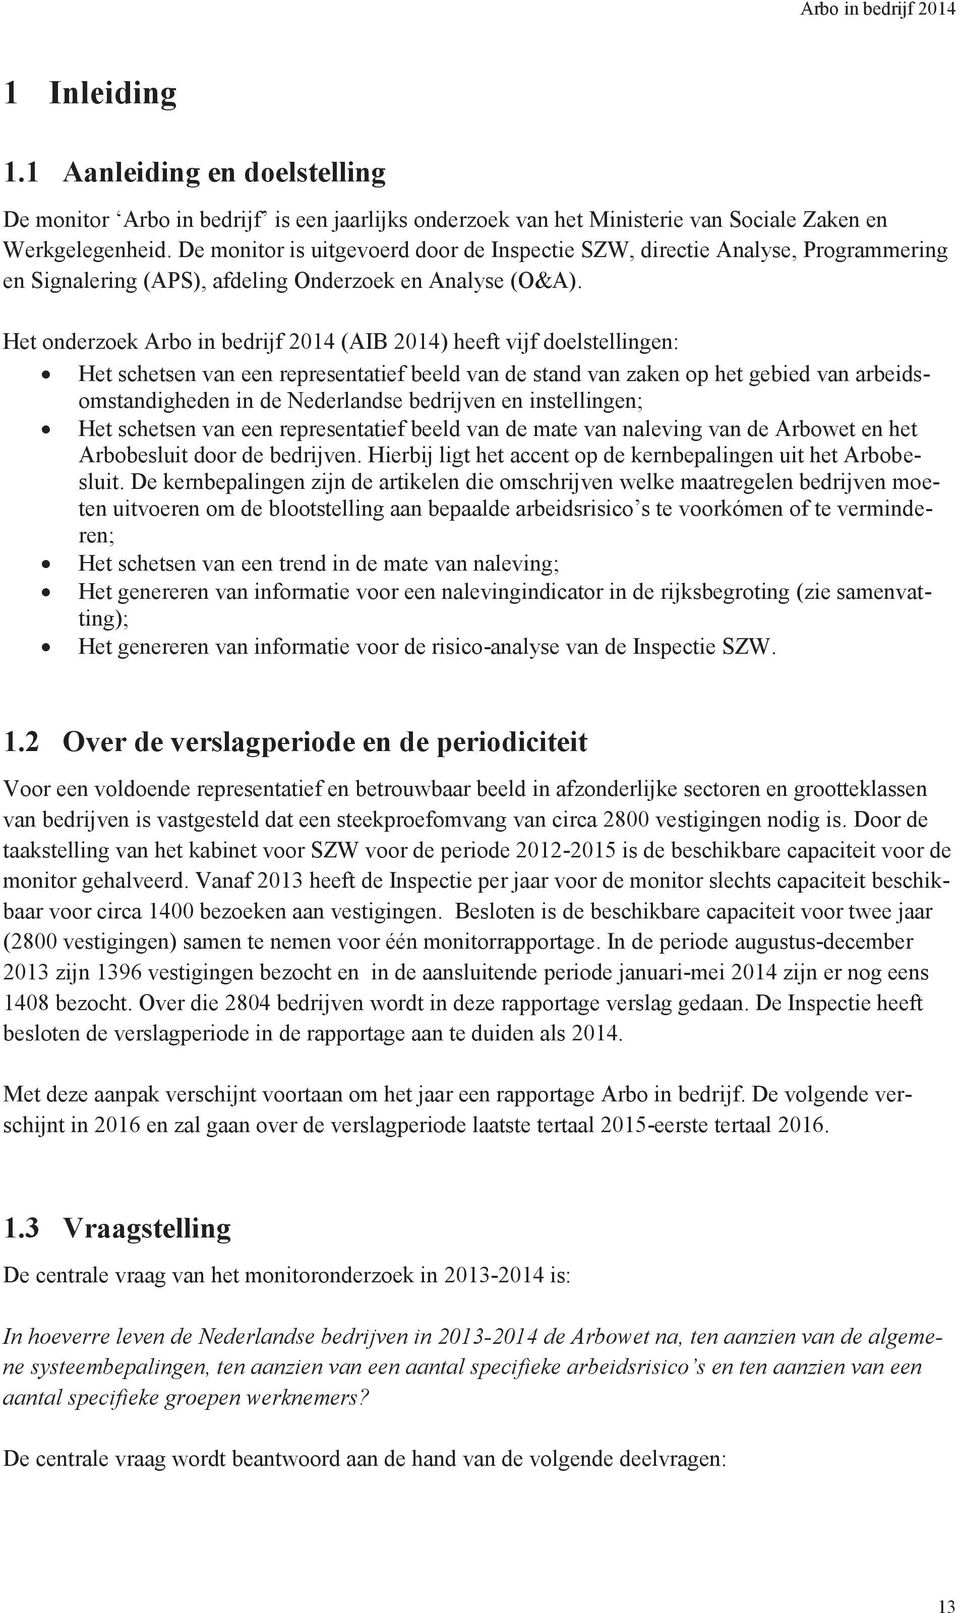 Het onderzoek Arbo in bedrijf 2014 (AIB 2014) heeft vijf doelstellingen: Het schetsen van een representatief beeld van de stand van zaken op het gebied van arbeidsomstandigheden in de Nederlandse